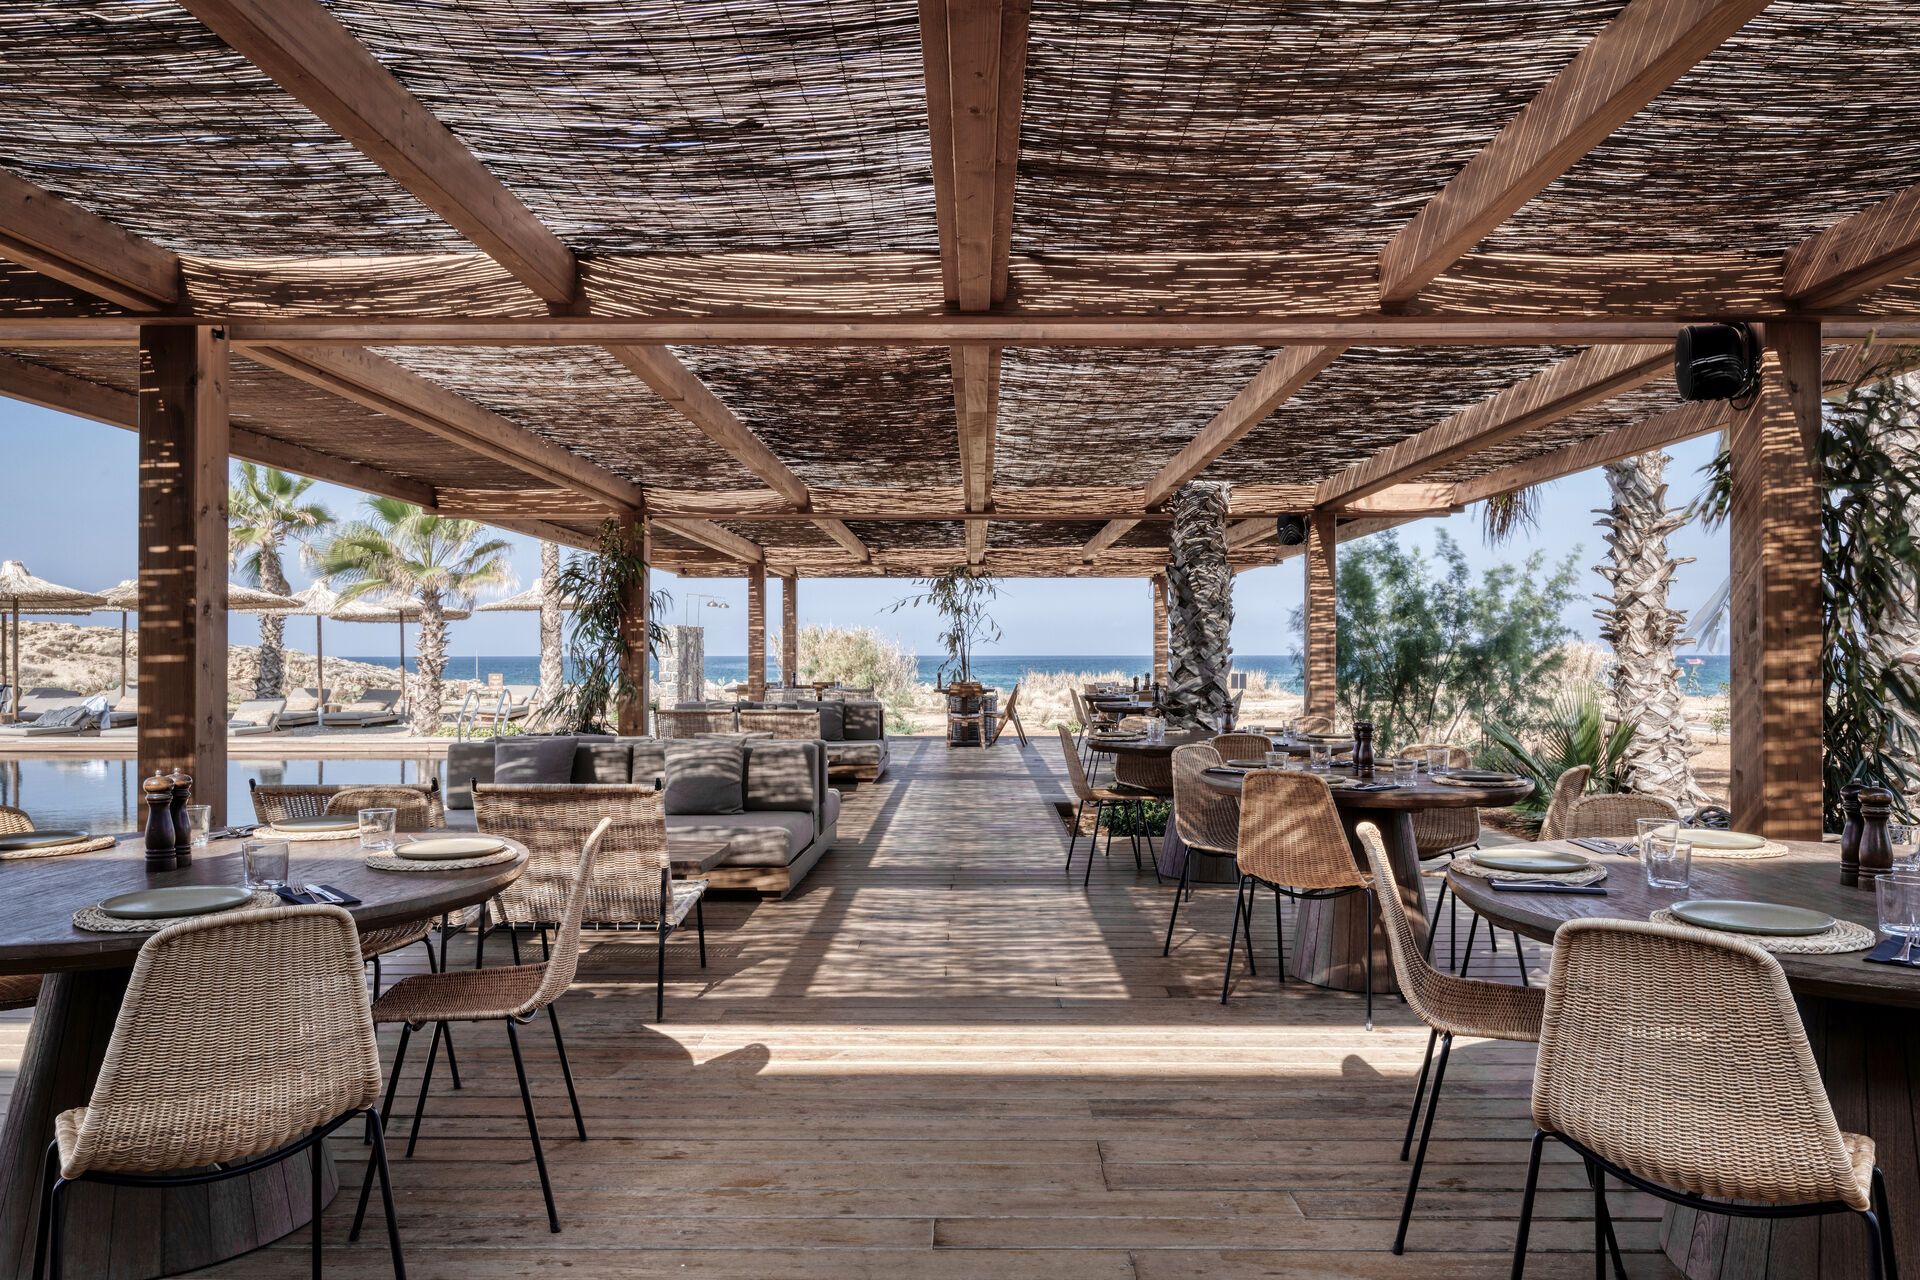 Crète - La Canée - Grèce - Iles grecques - Hotel Domes Zeen Chania, a Luxury Collection Resort, Crete 5*